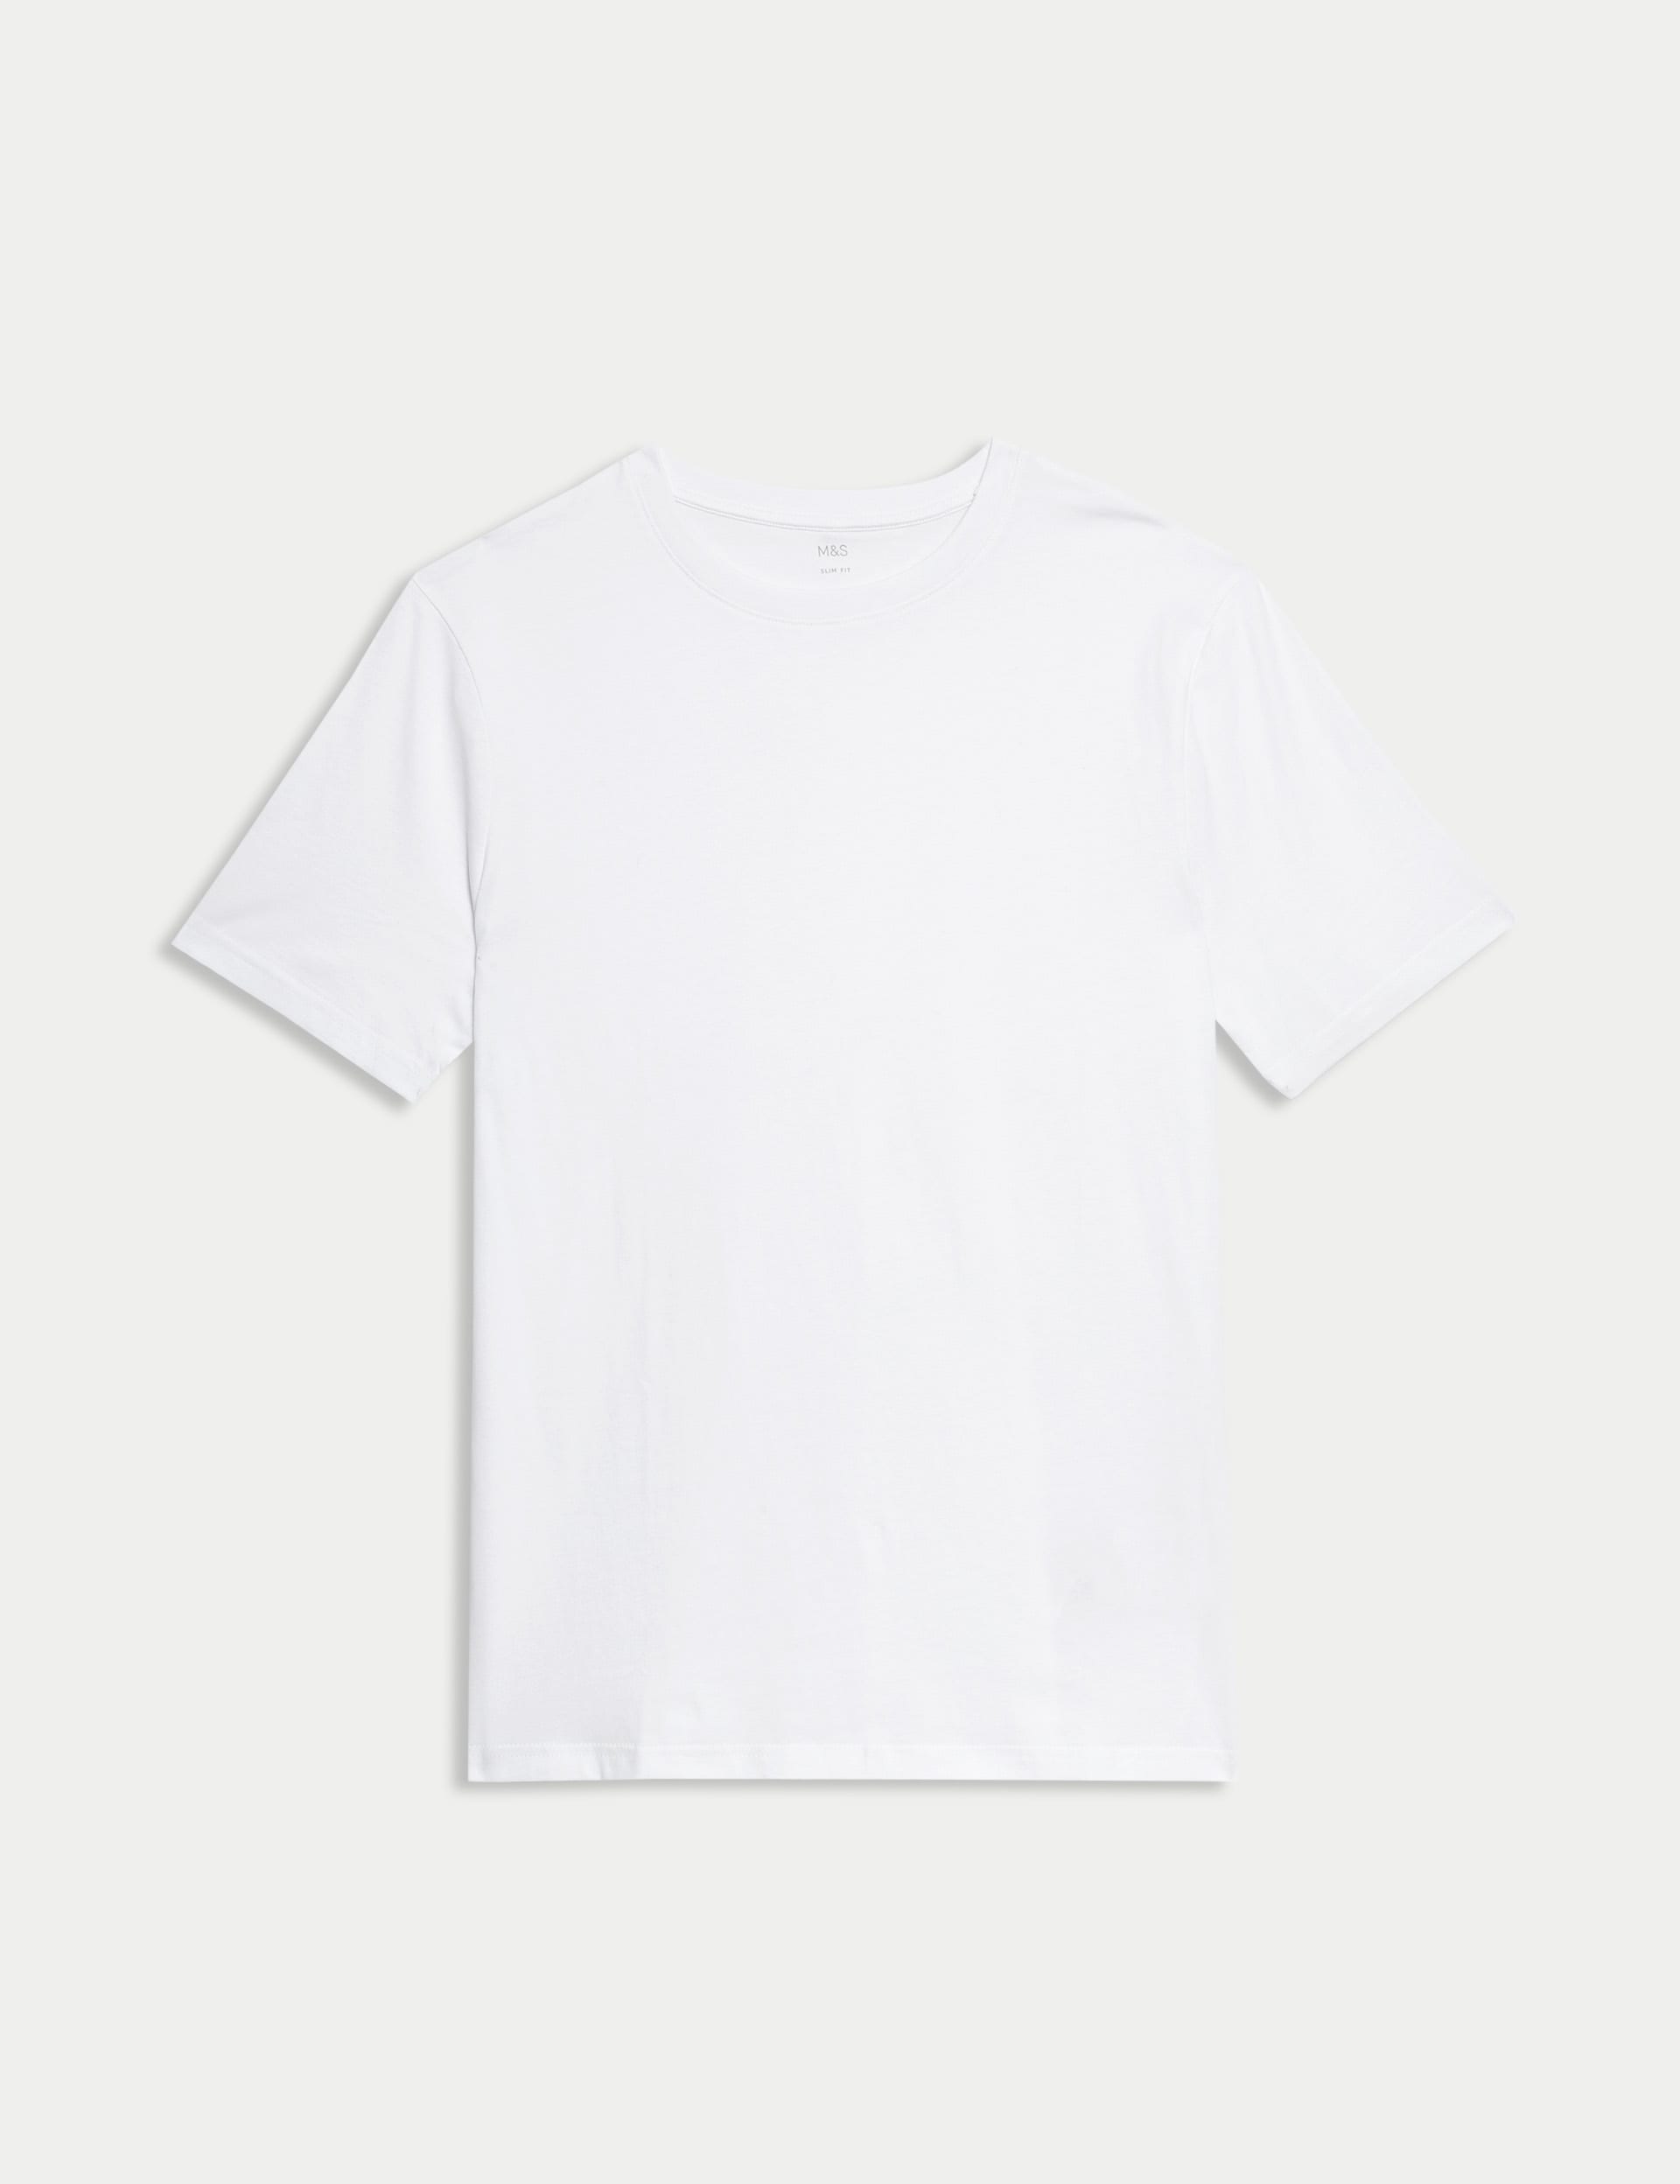 Slim Fit Pure Cotton Crew Neck T-Shirt